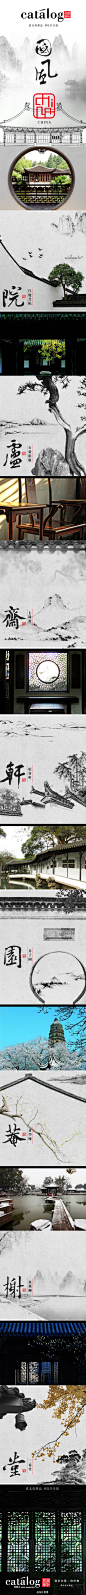 中国古典意象中的亭台楼榭